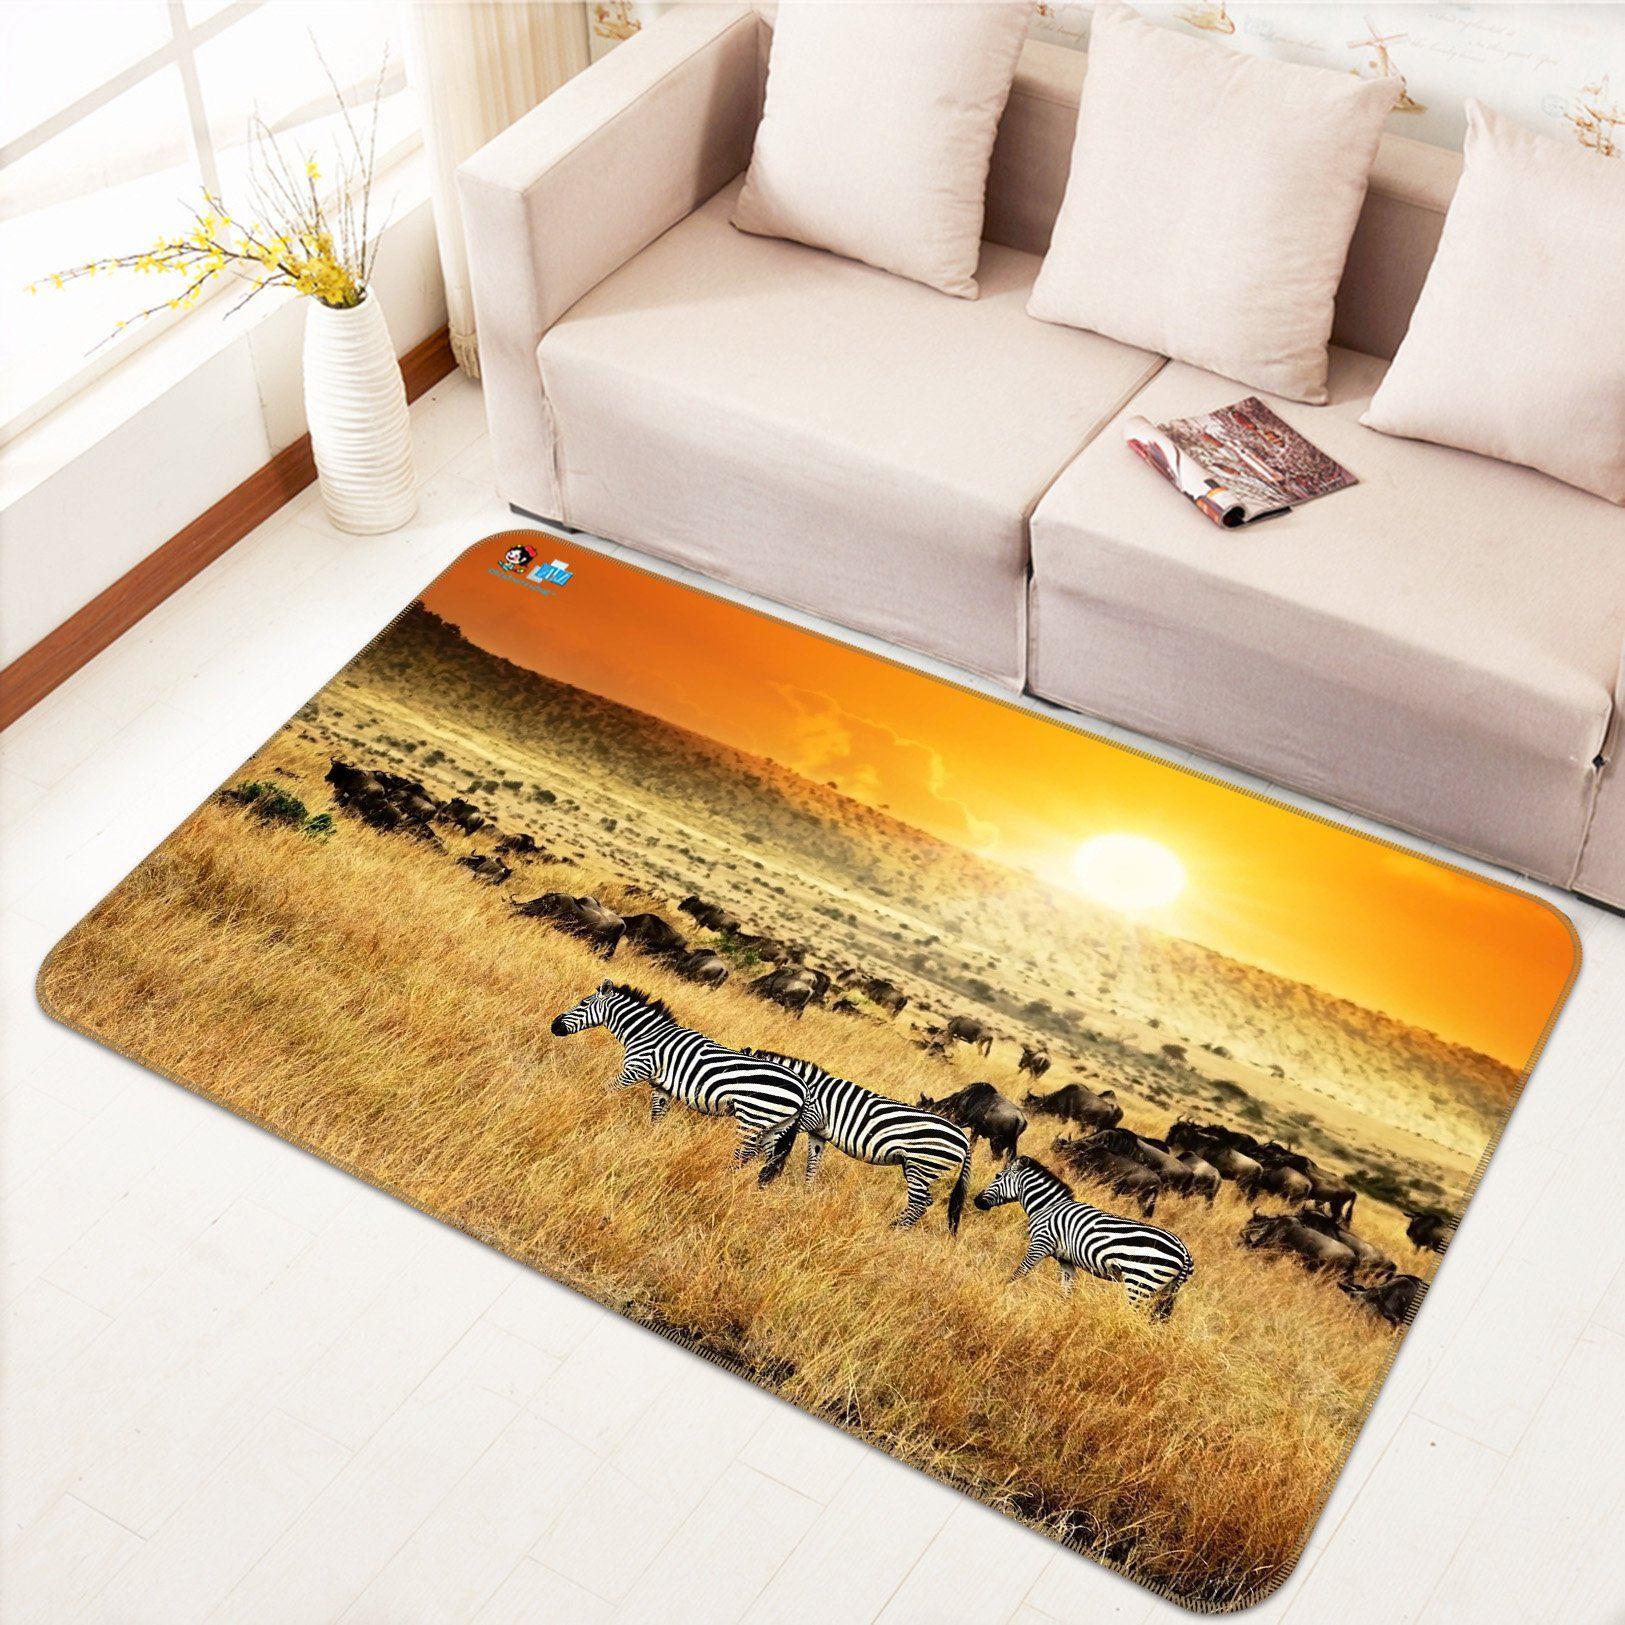 3D Home Carpet Sunset Zebra 399 Non Slip Rug Mat, 40cmx60cm (15.7"x23.6")